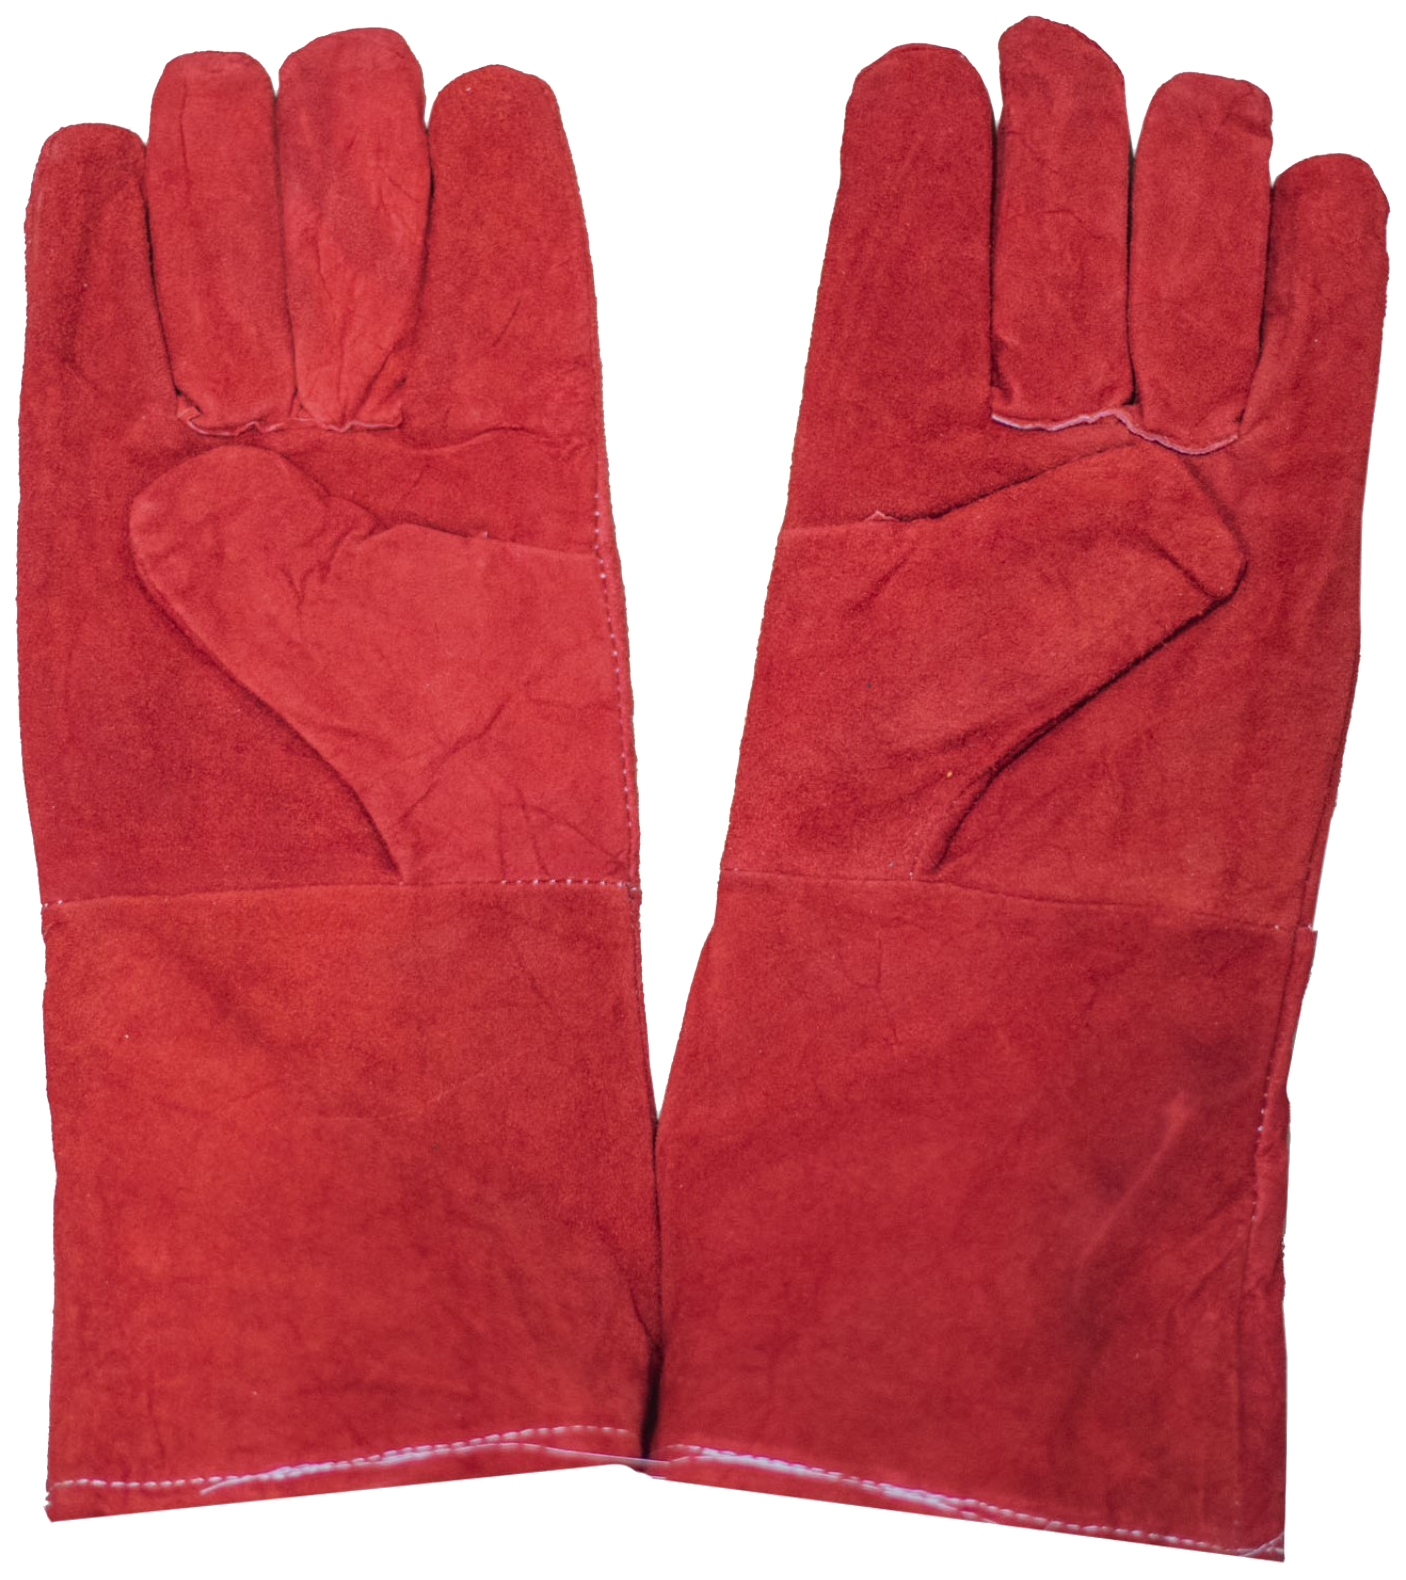 Ветеринарные защитные перчатки ТД ВЕТ, 35 см